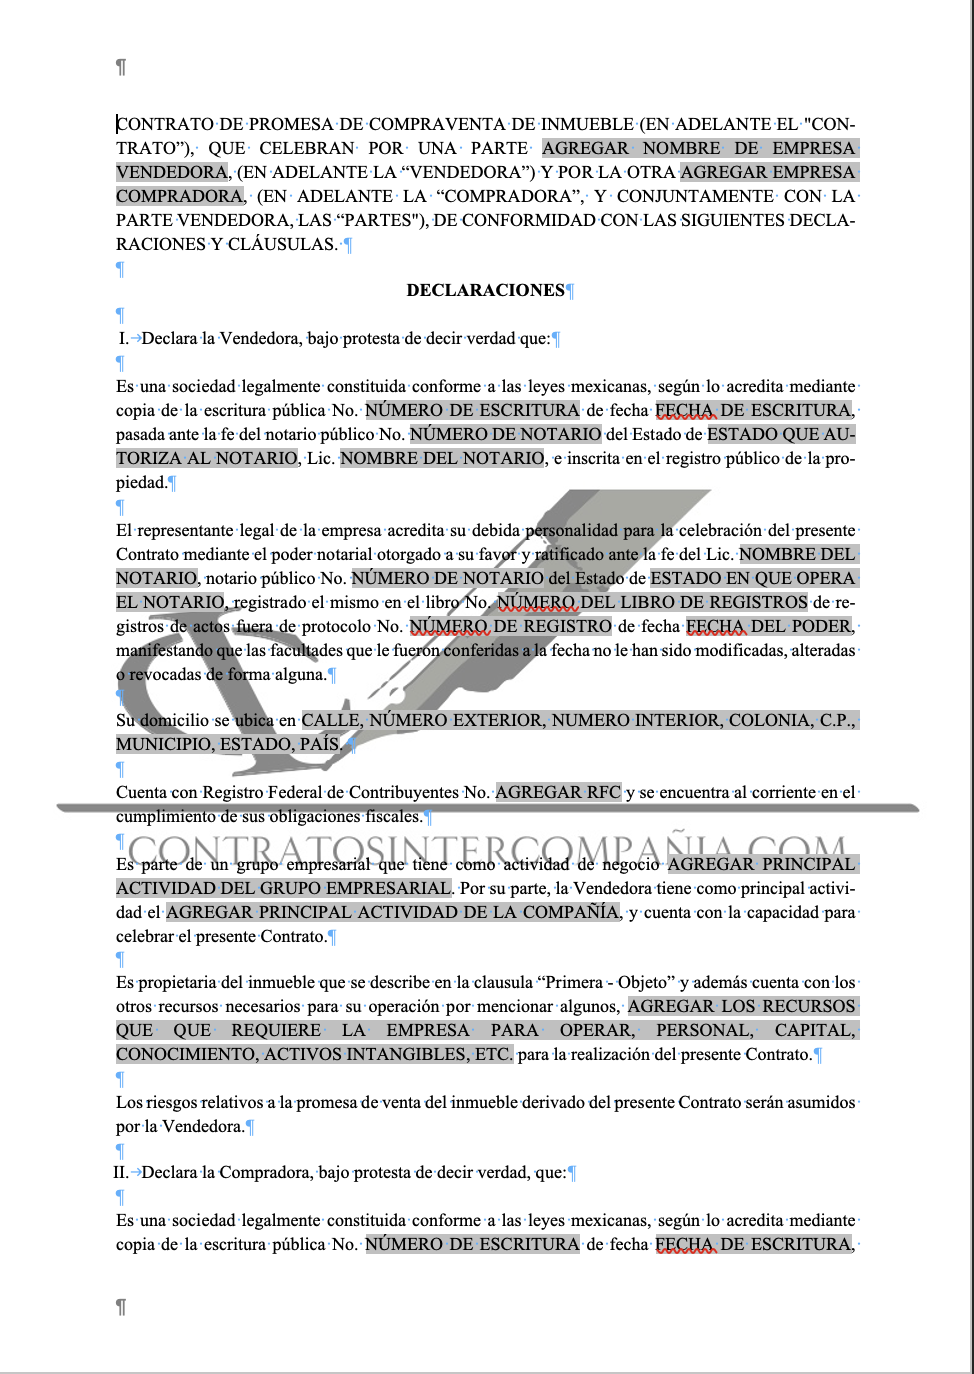 Contrato de promesa de compra - Contratos Intercompañía